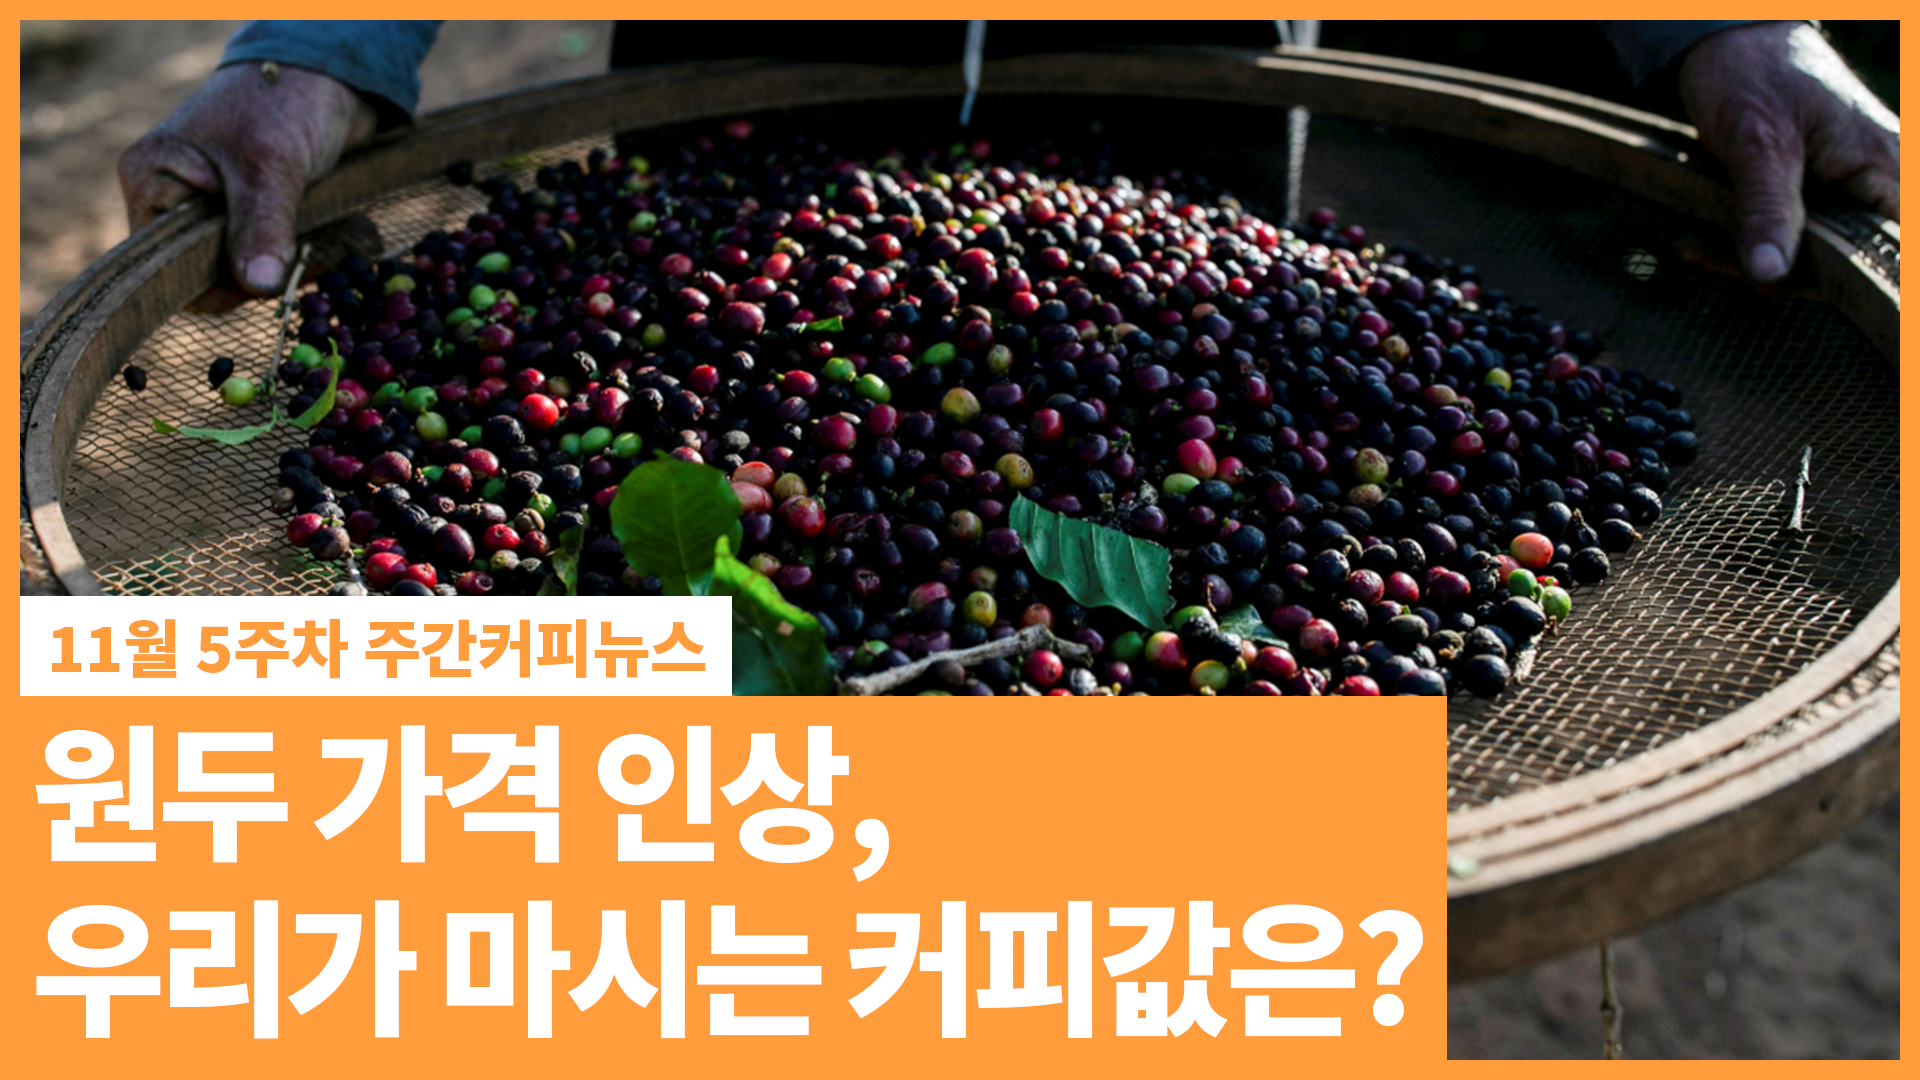 원두 가격 인상, 우리가 마시는 커피값은?' | 11월 5주차 주간커피뉴스